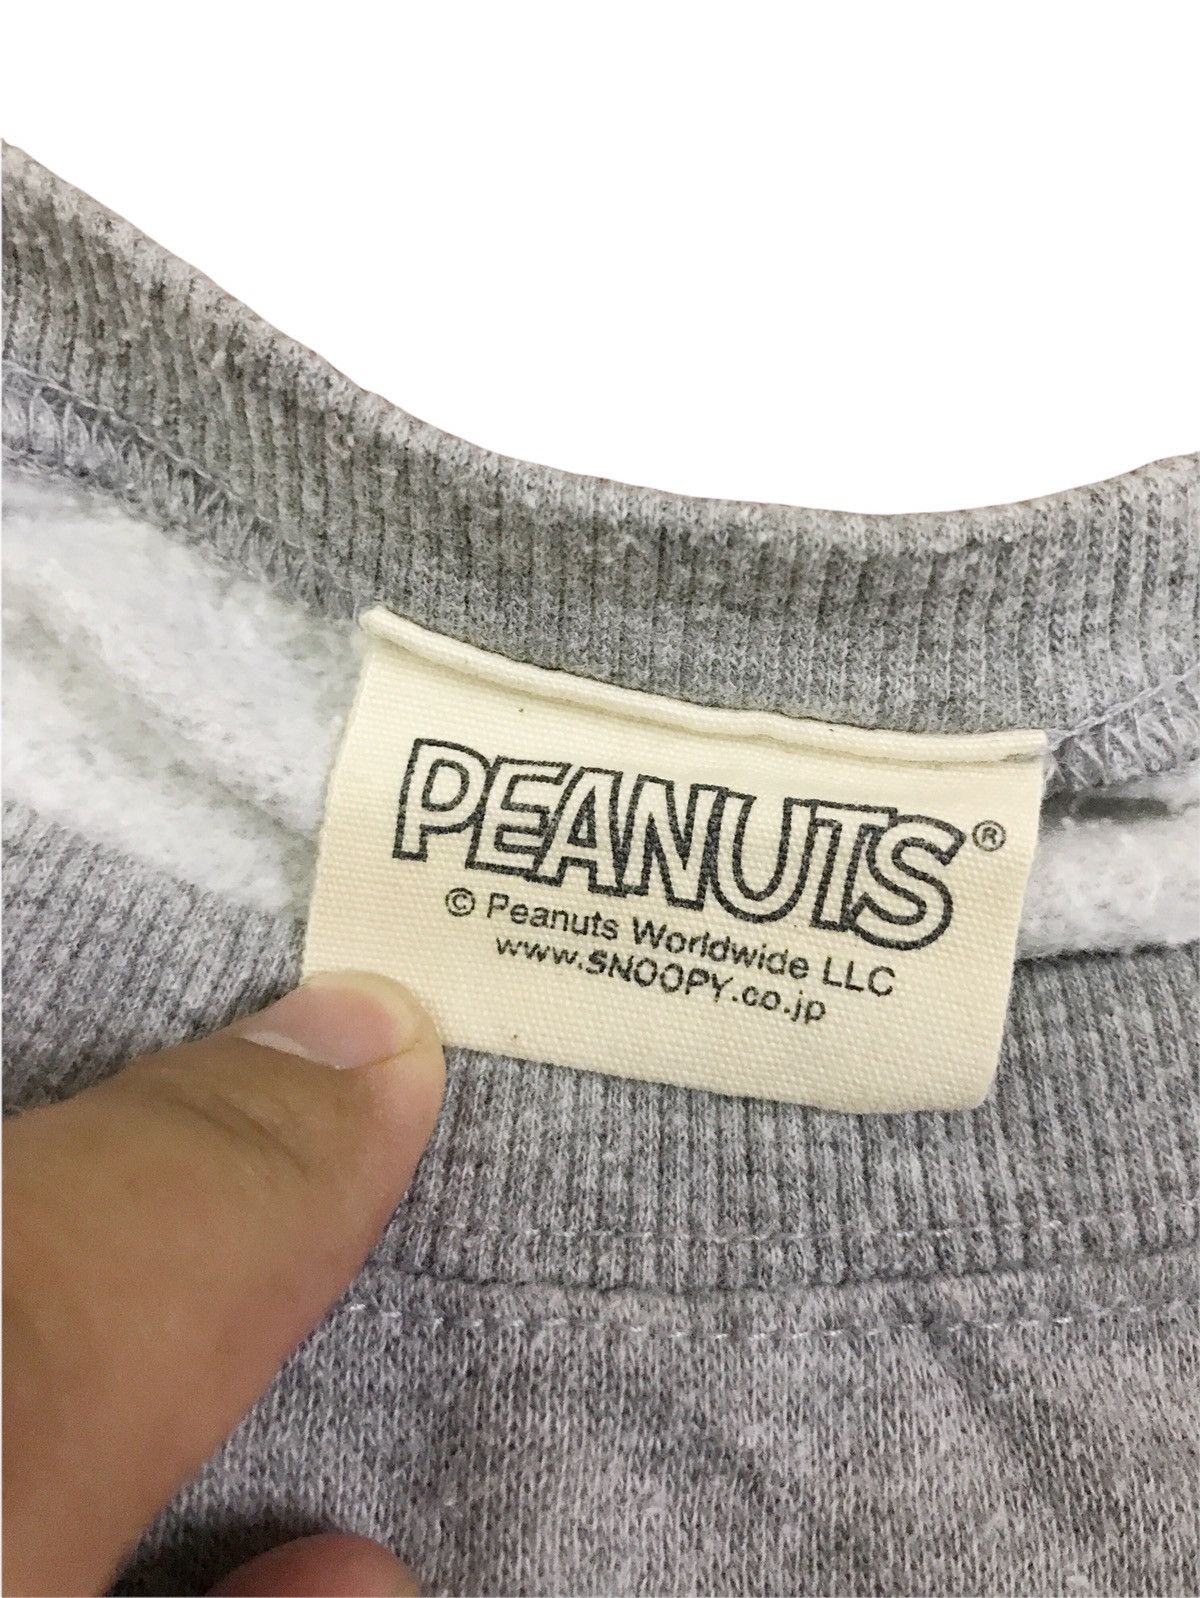 Peanuts Vintage Peanuts Sweatshirt Size US S / EU 44-46 / 1 - 3 Thumbnail